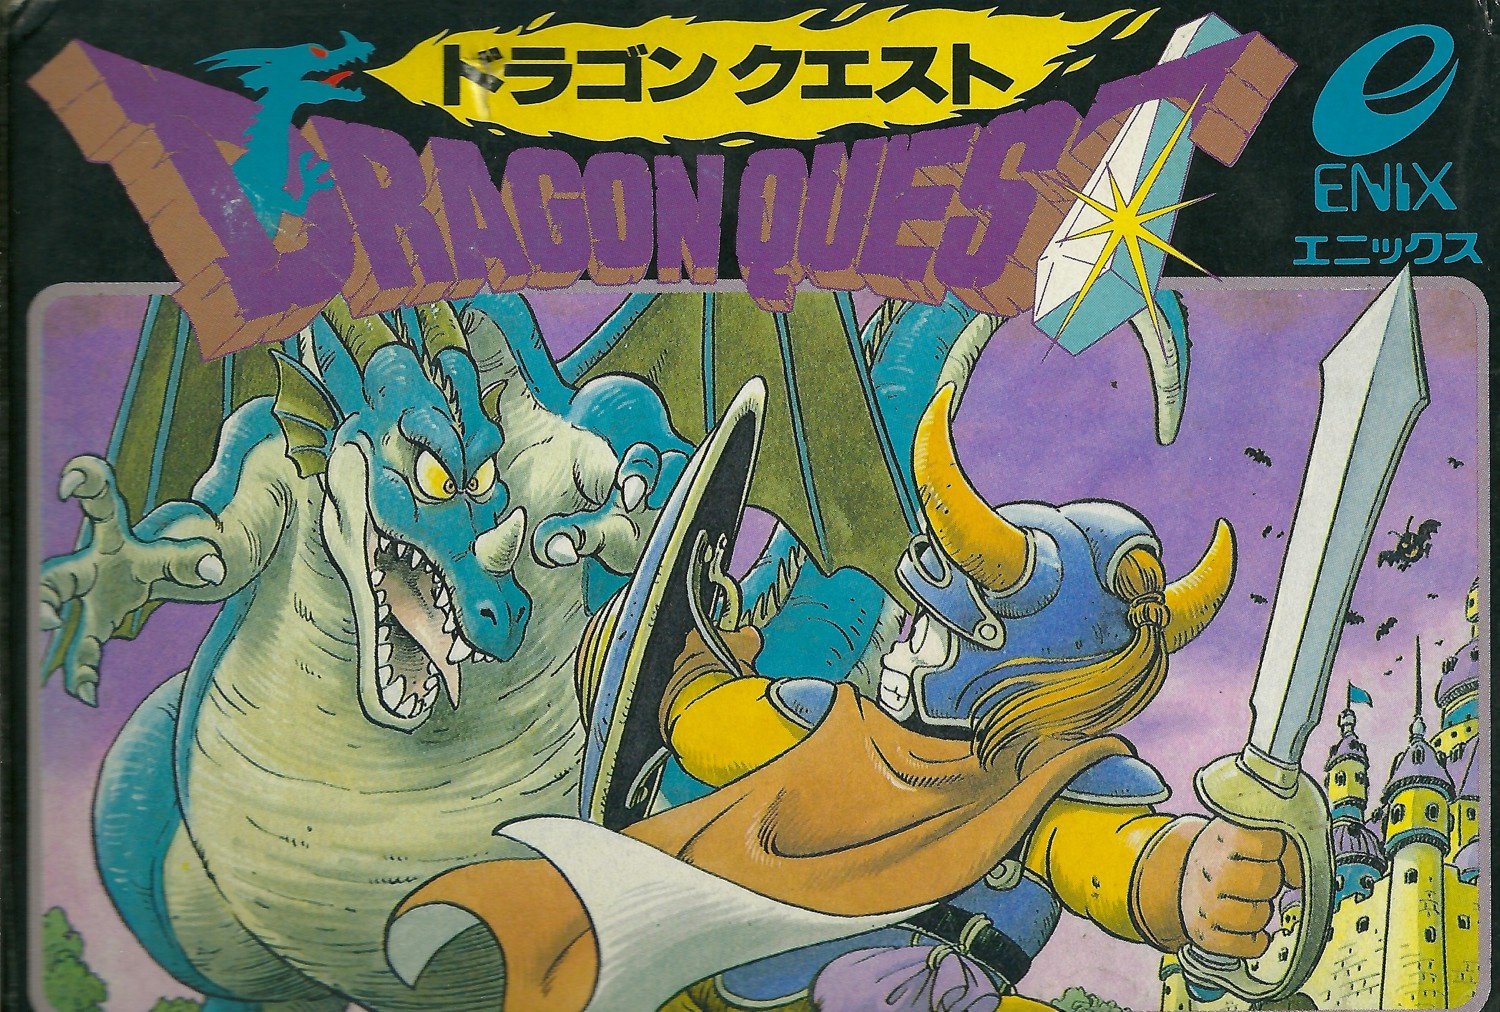 Dragon Quest: RPG, game karya pencipta Dragon Ball yang sukses